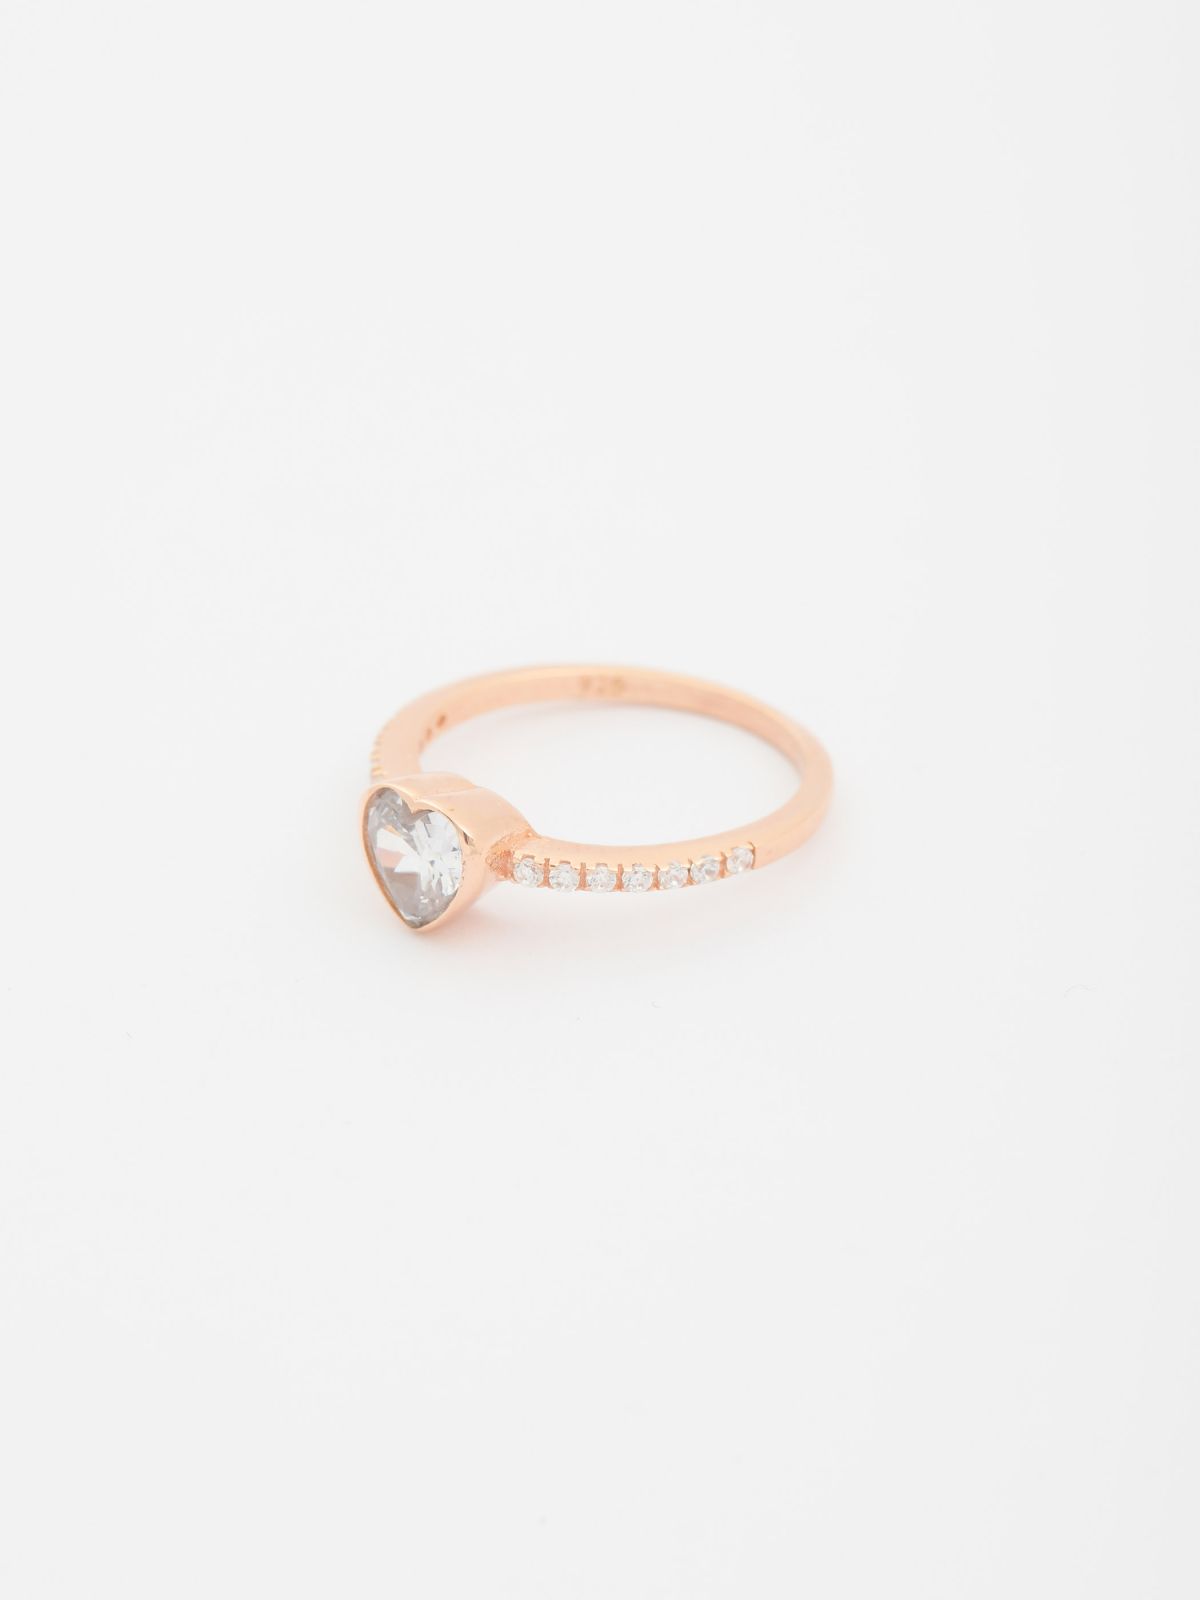  טבעת זרקונים בשילוב אבן לב / My Anabelle של TX COLLAB